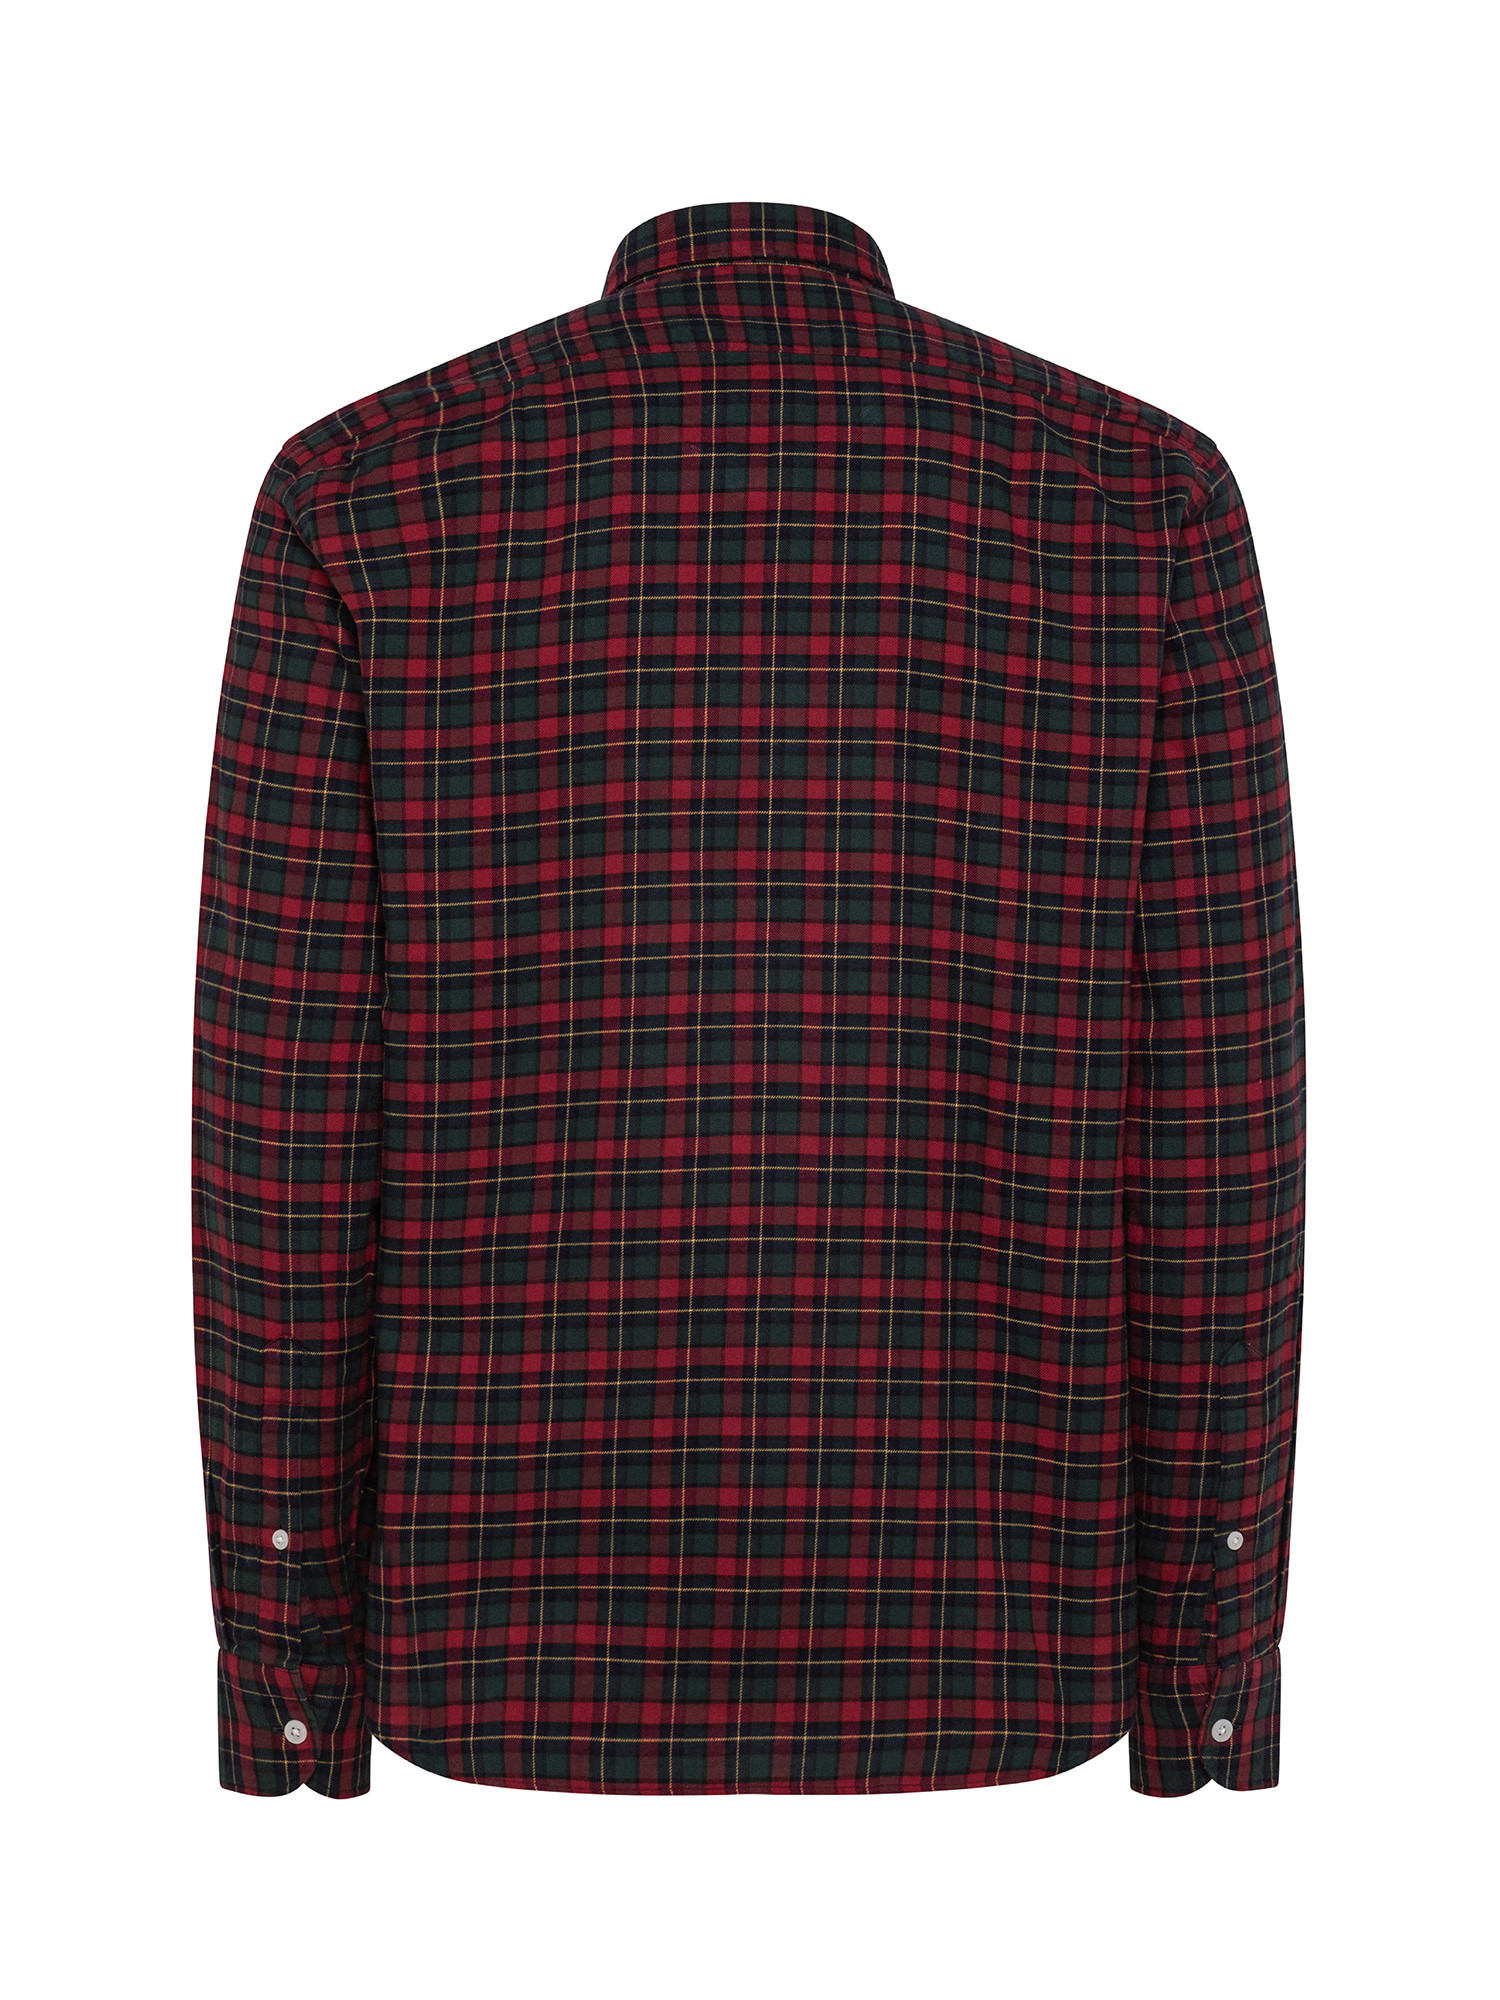 Camicia tailor fit in morbida flanella di cotone organico, Rosso, large image number 1